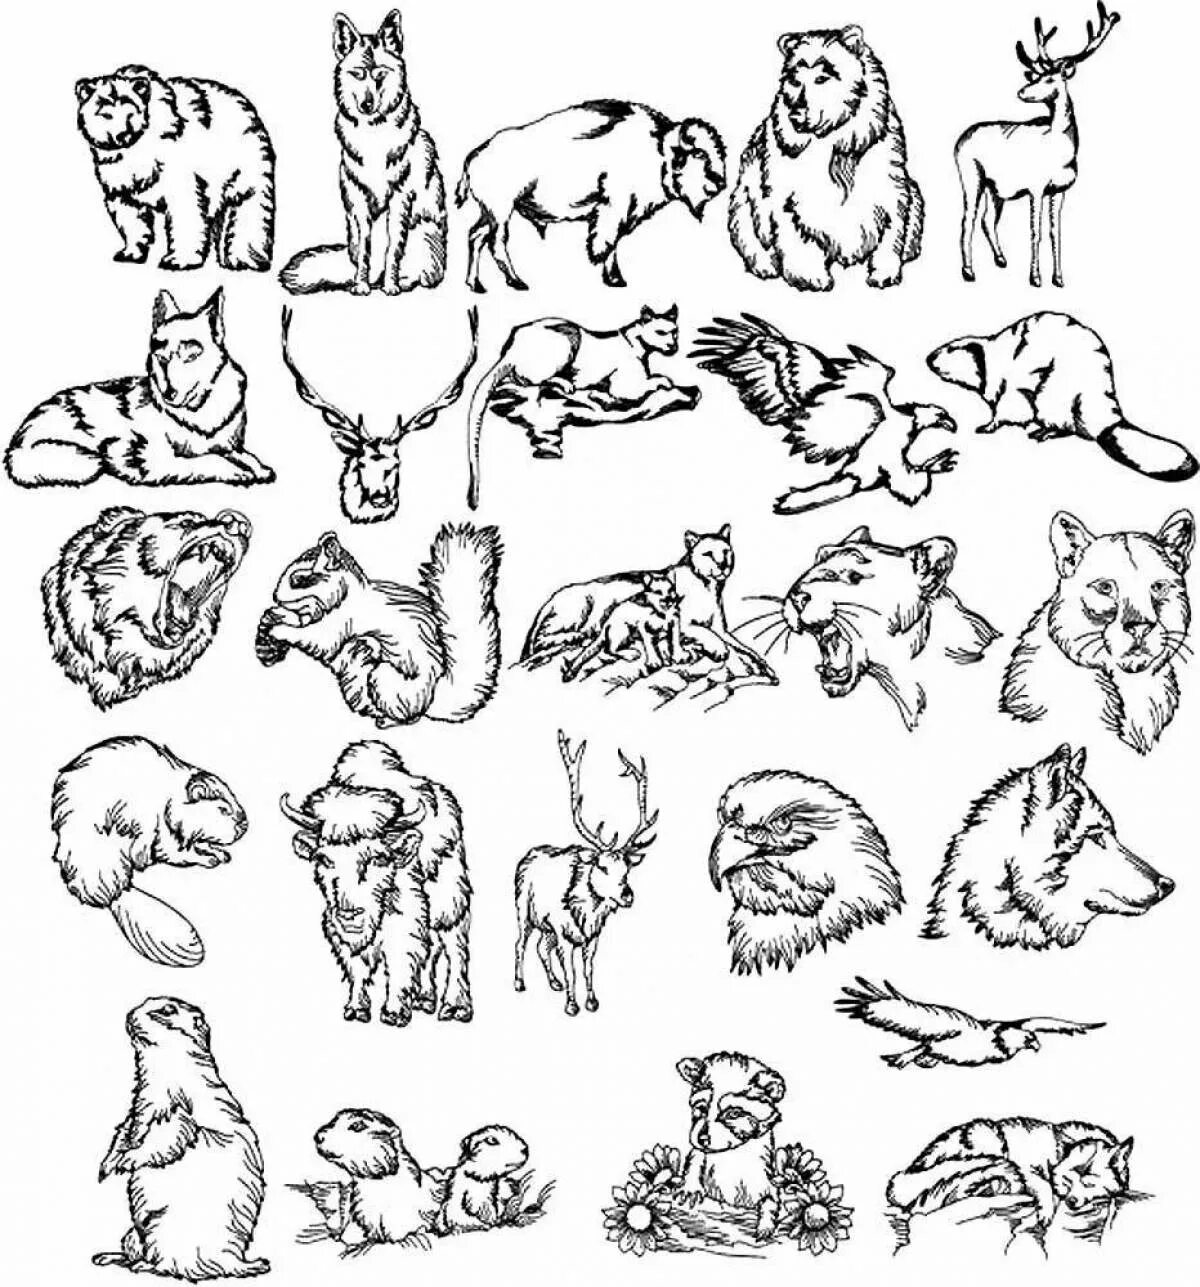 Много раскрасок на 1 листе. Раскраски. Животные. Маленькие рисунки животных. Раскраска "Дикие животные". Зарисовки диких животных.